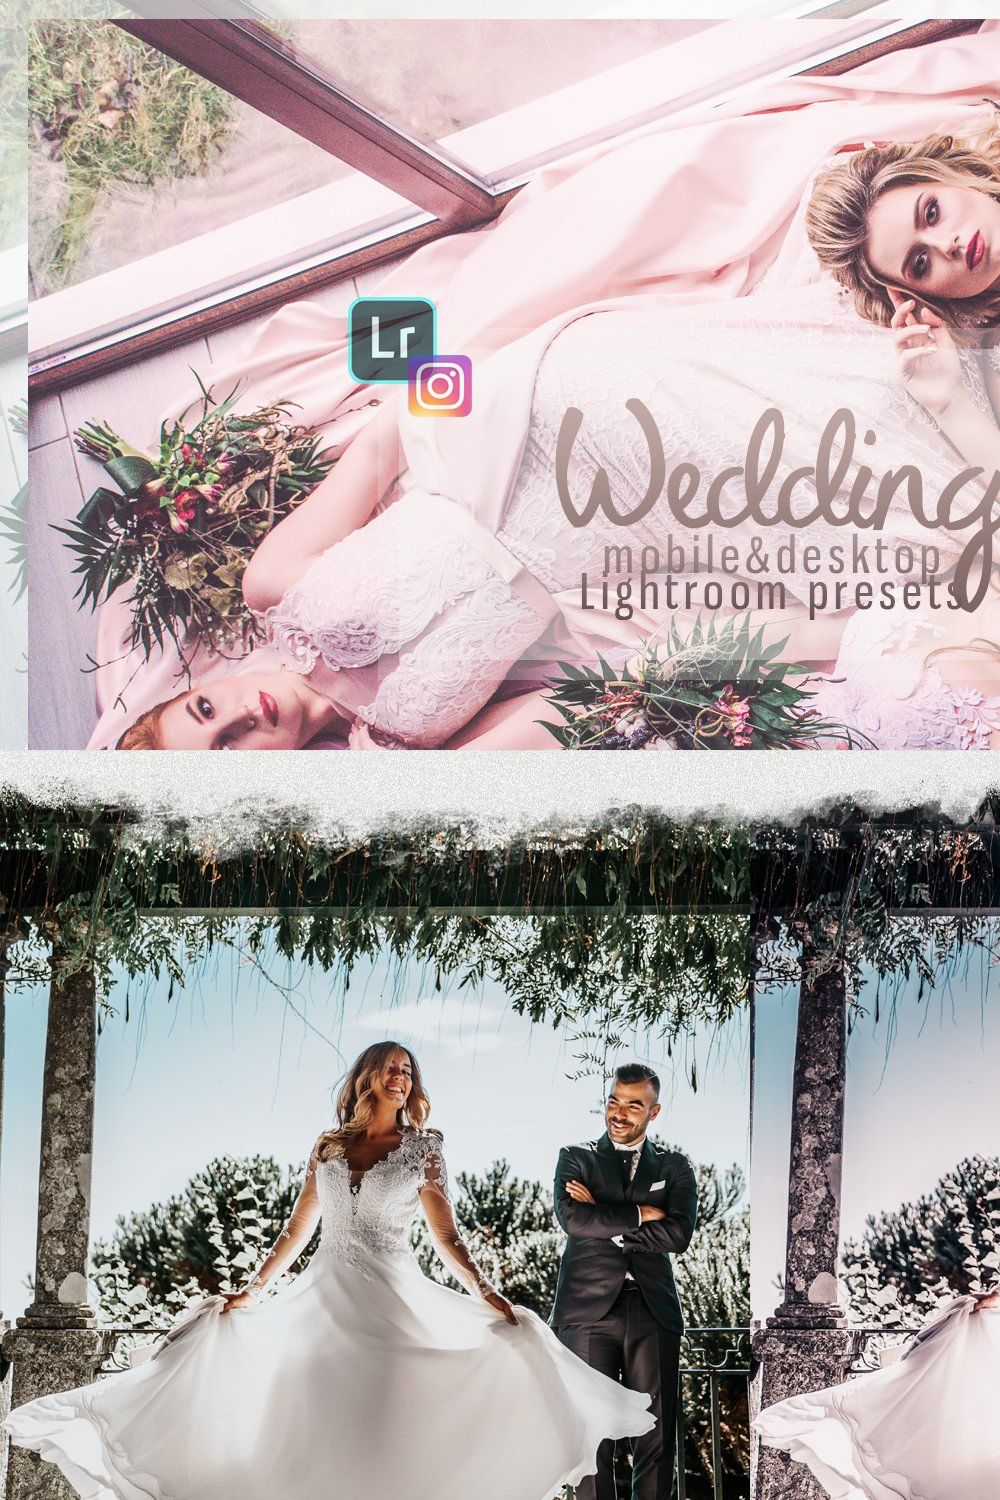 Wedding Lightroom presets pinterest preview image.